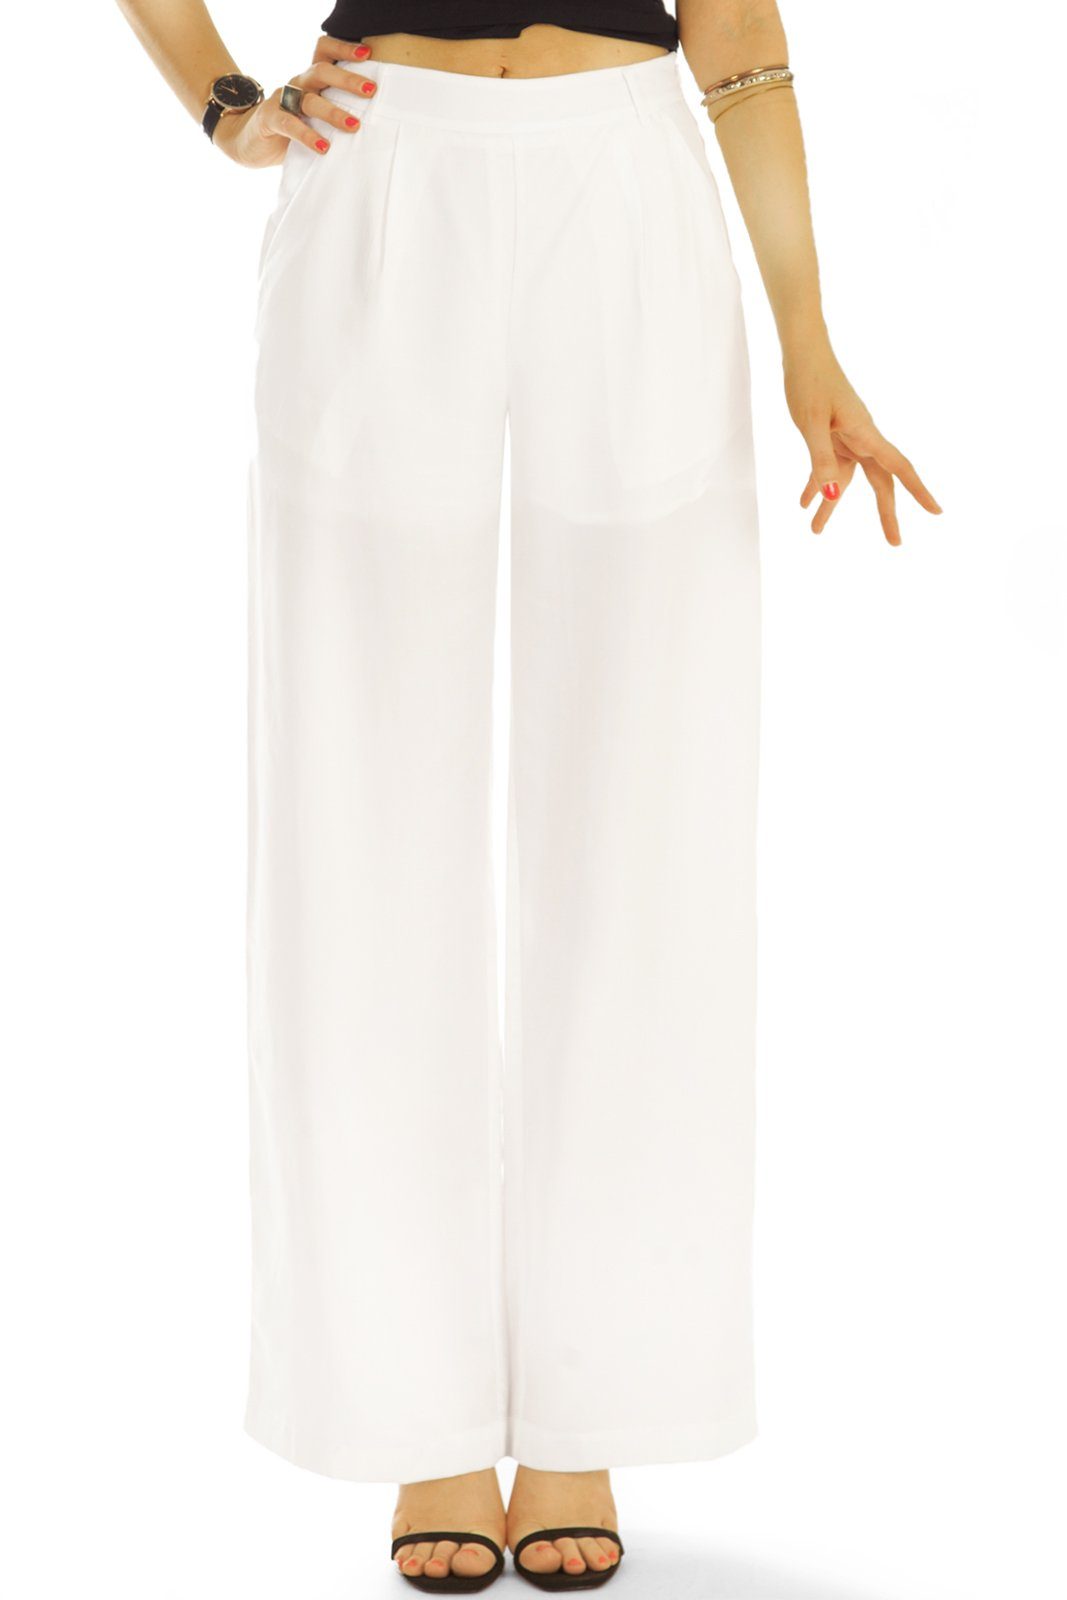 Hosen Unifarben Bundfalten be weit in geschnittene Stoffhose Stoffhosen, - Damen bequem j43g-2 - weiß styled